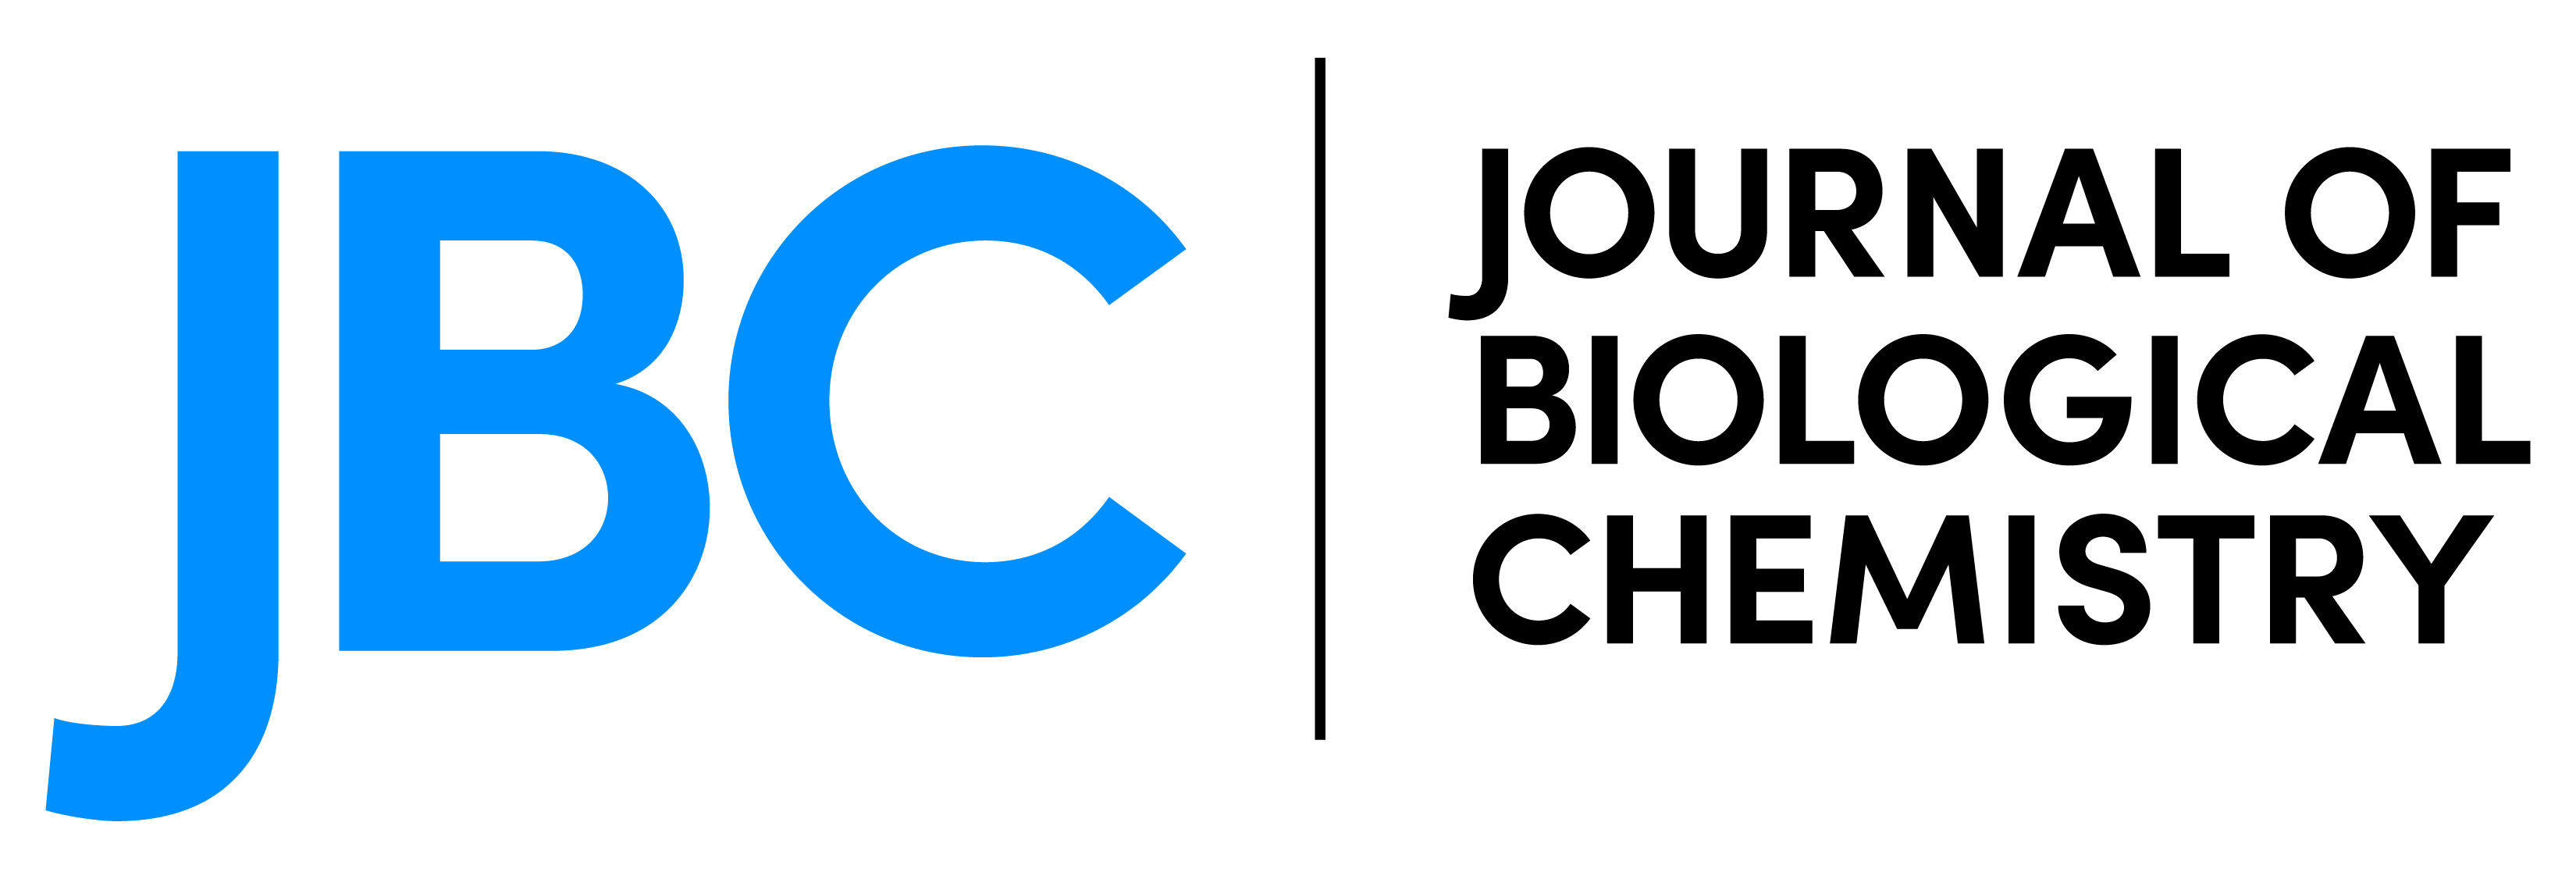 2018-04/jbc_logo-01.jpg